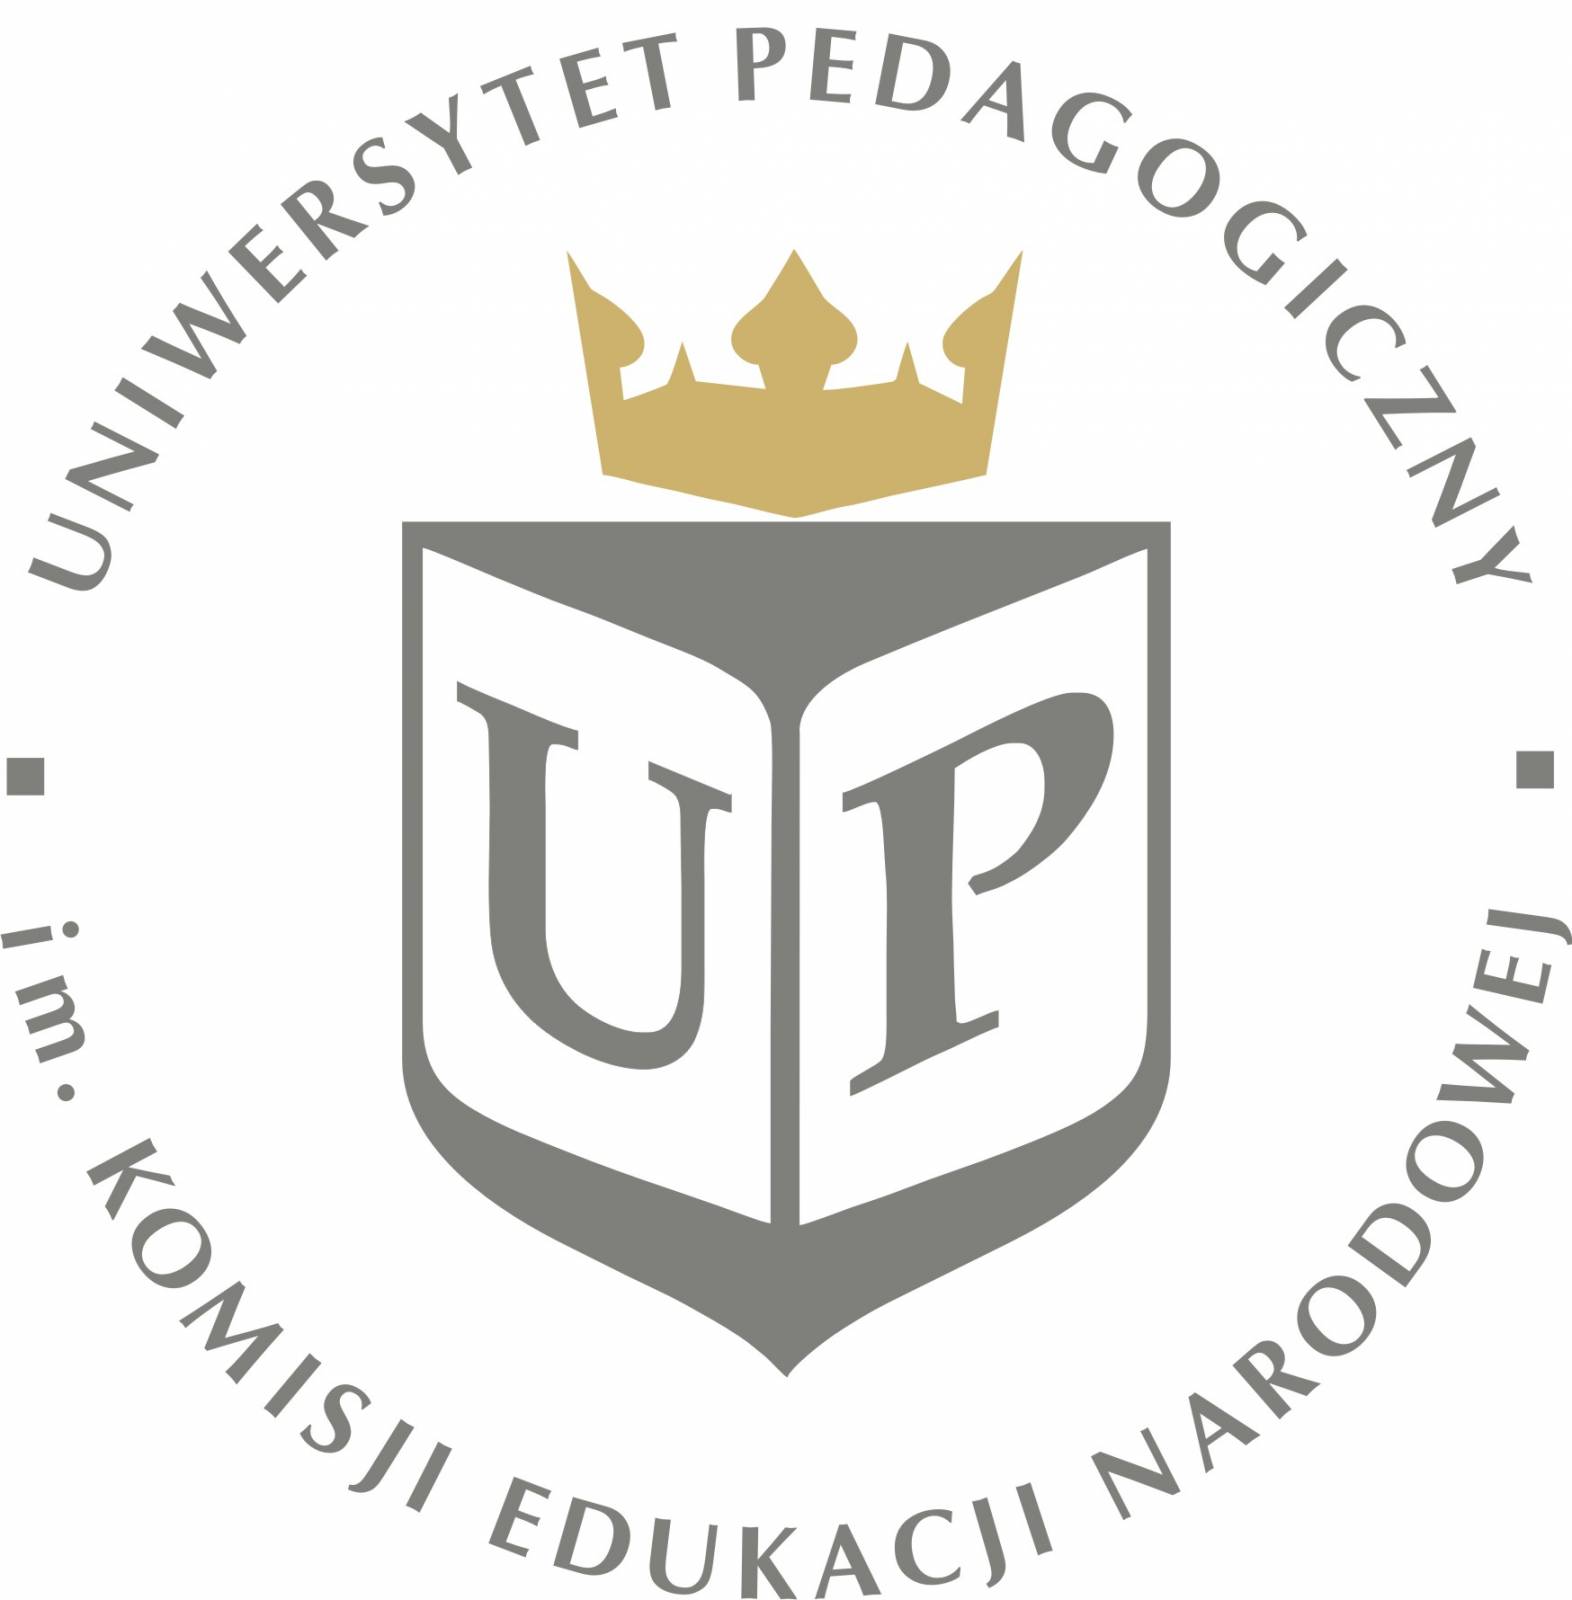 Uniwersytet Pedagogiczny